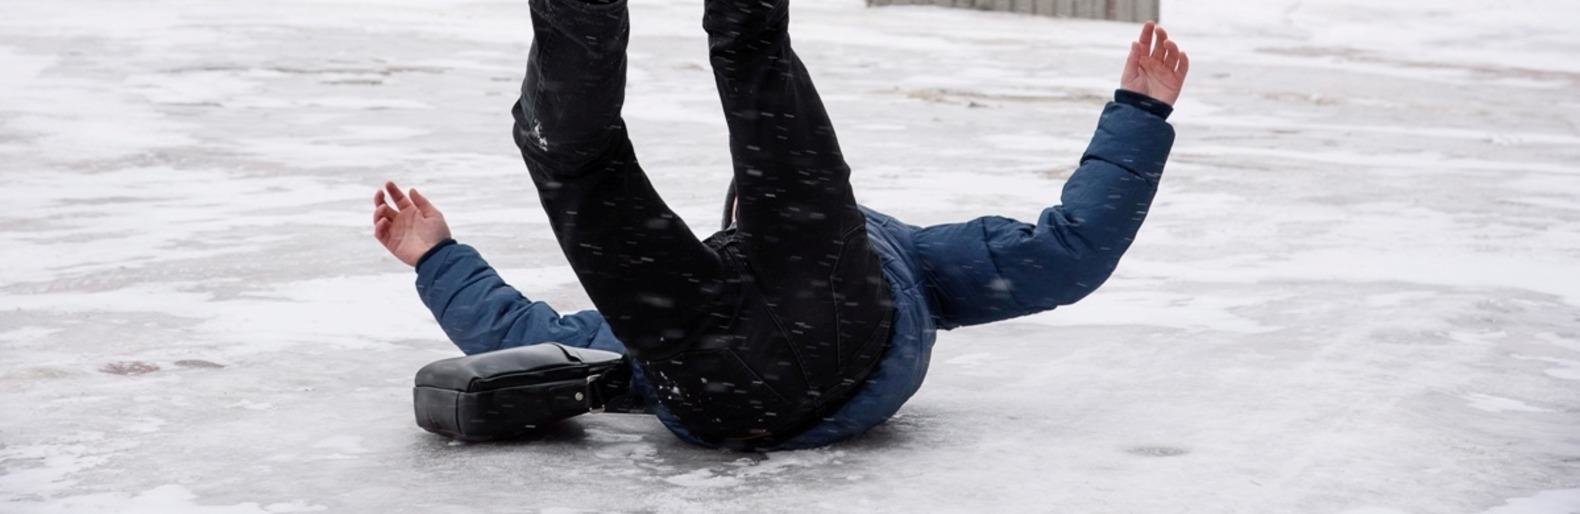 Затылком об лед. Гололед. Поскользнулся на льду. Человек падает на льду.